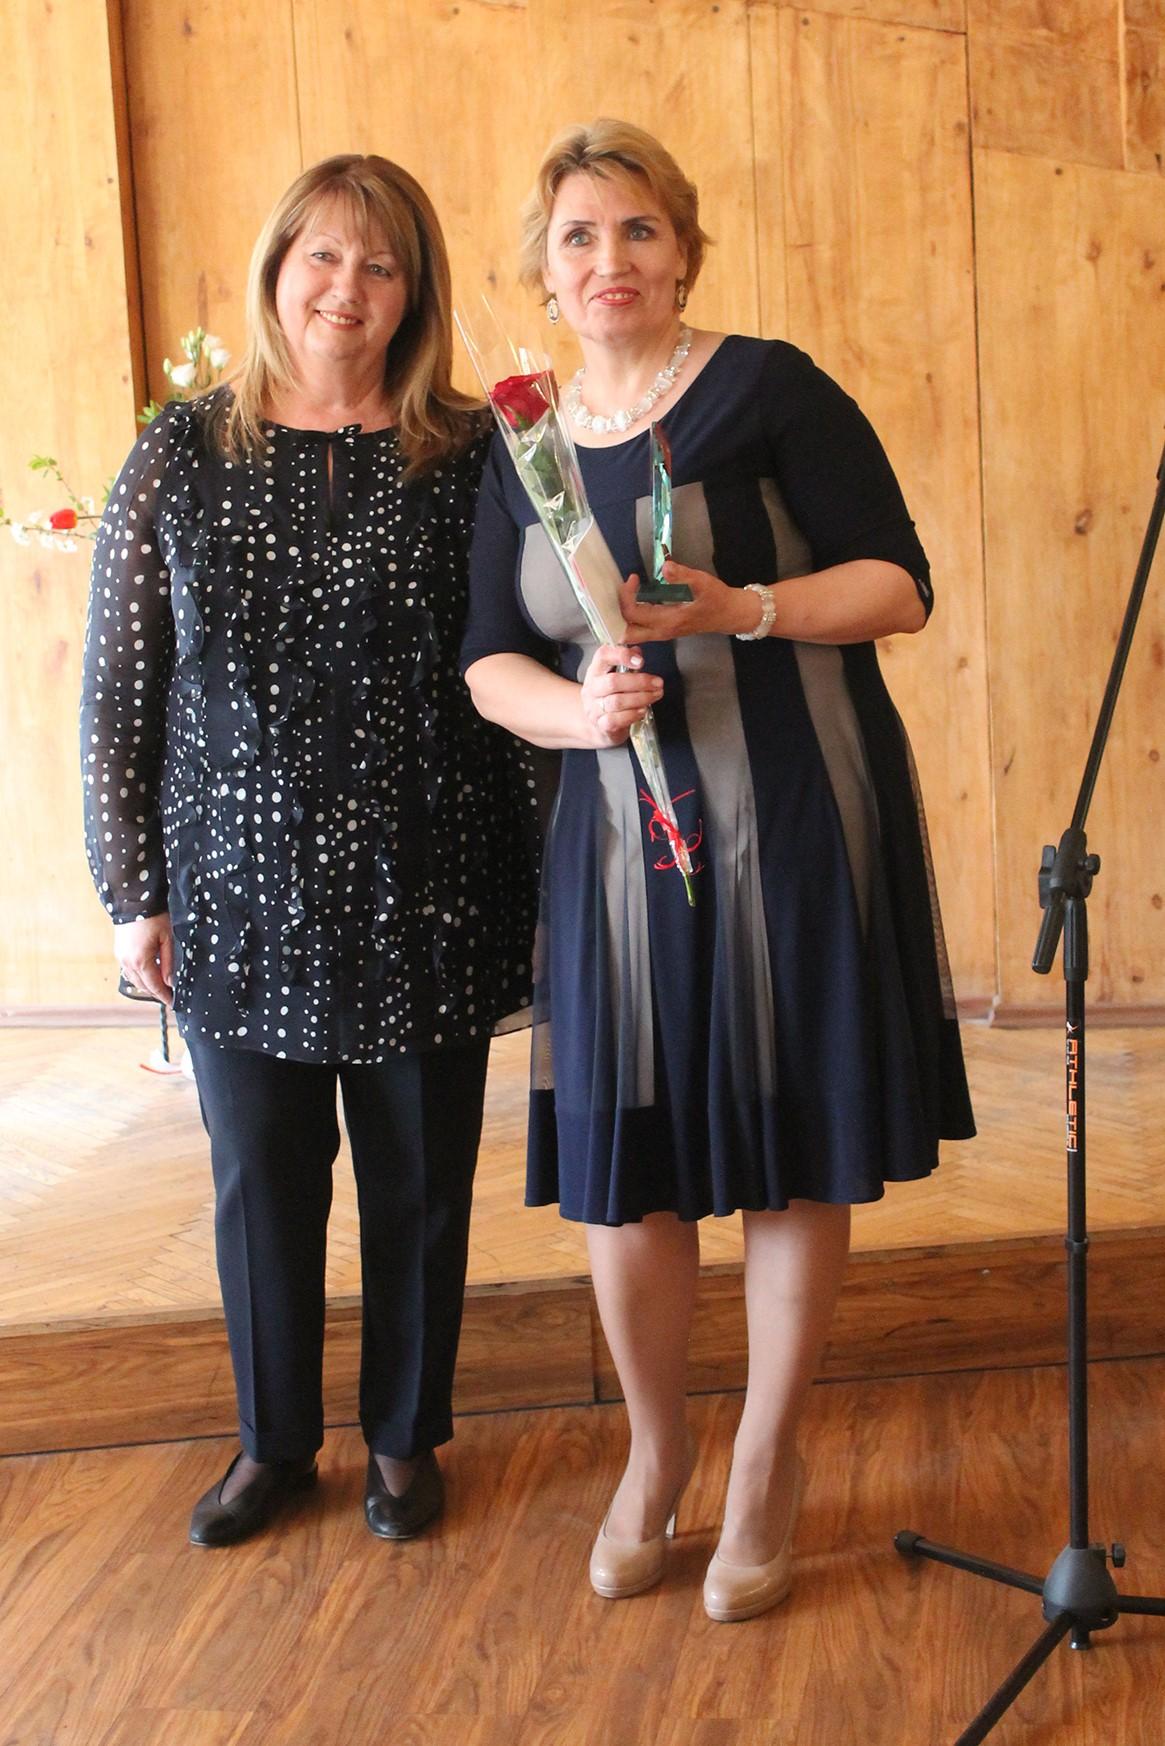 Įvairių profesijų dirbantiesiems įteiktos padėkos / Metų darbuotojai Genei Astikienei apdovanojimą įteikė Europos Parlamento moterų teisių ir lyčių lygybės komiteto pirmininkė Vilija Blinkevičiūtė.